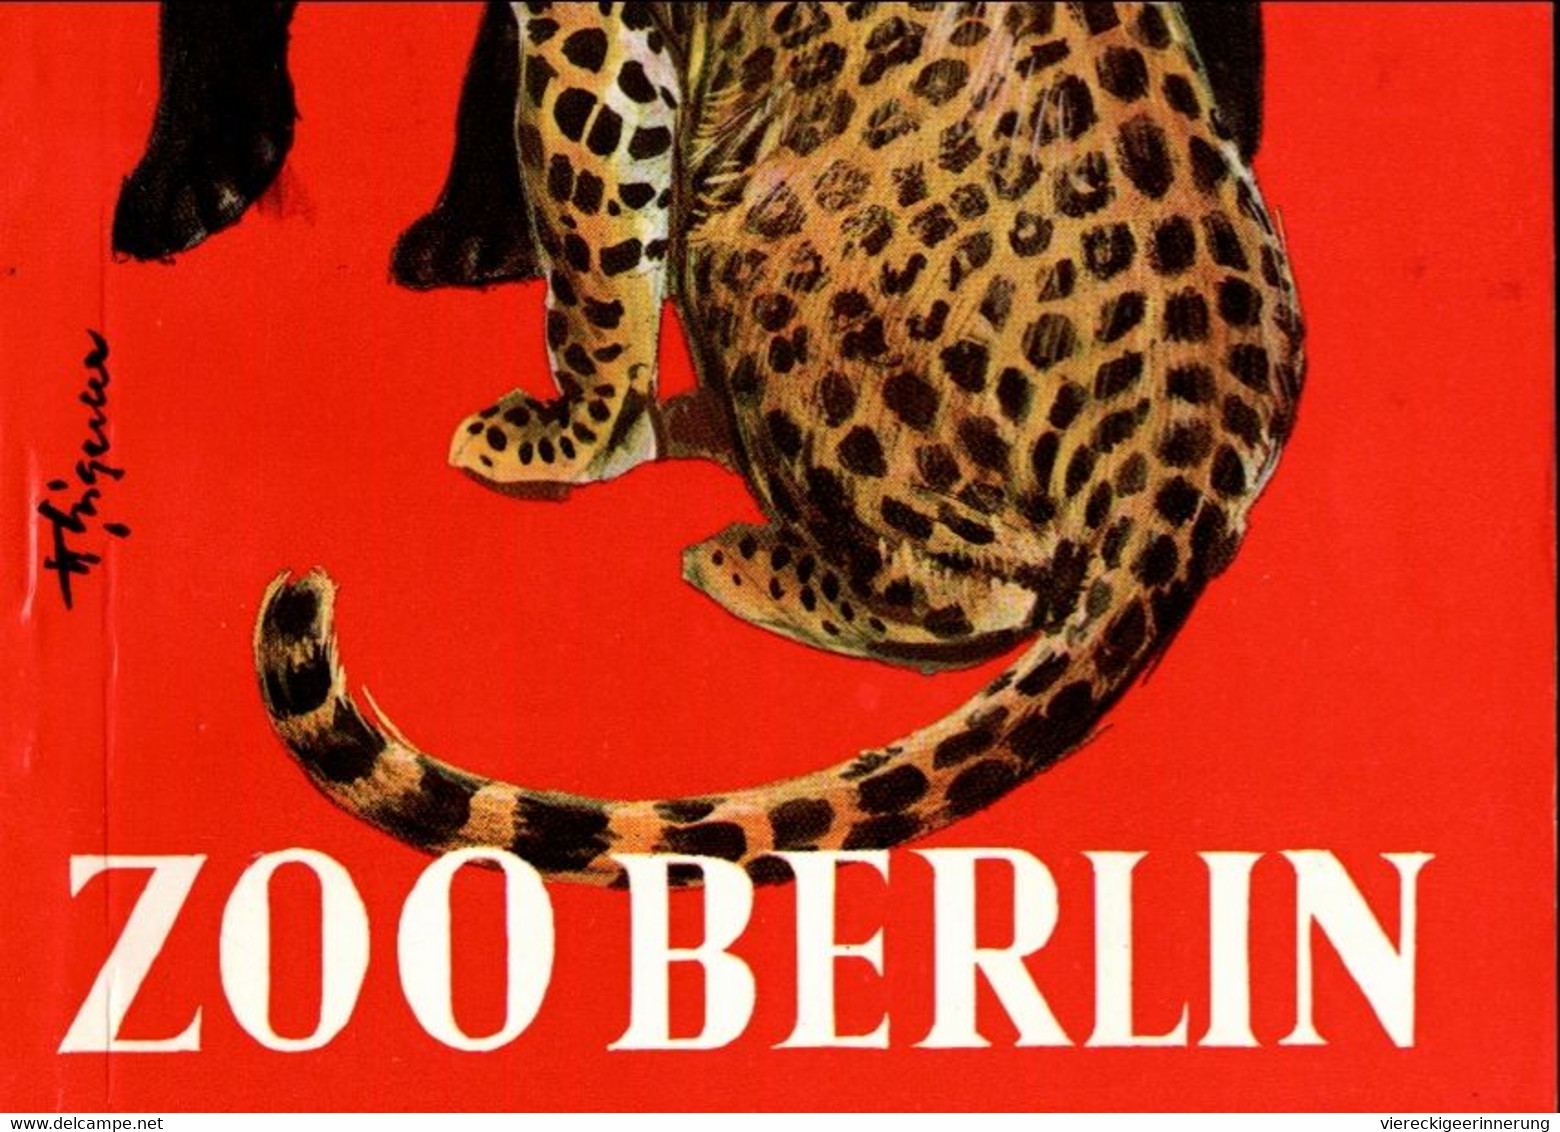 ! 1973 Wegweiser Durch Den Zoologischen Garten Berlin , 102 Seiten - Sonstige & Ohne Zuordnung